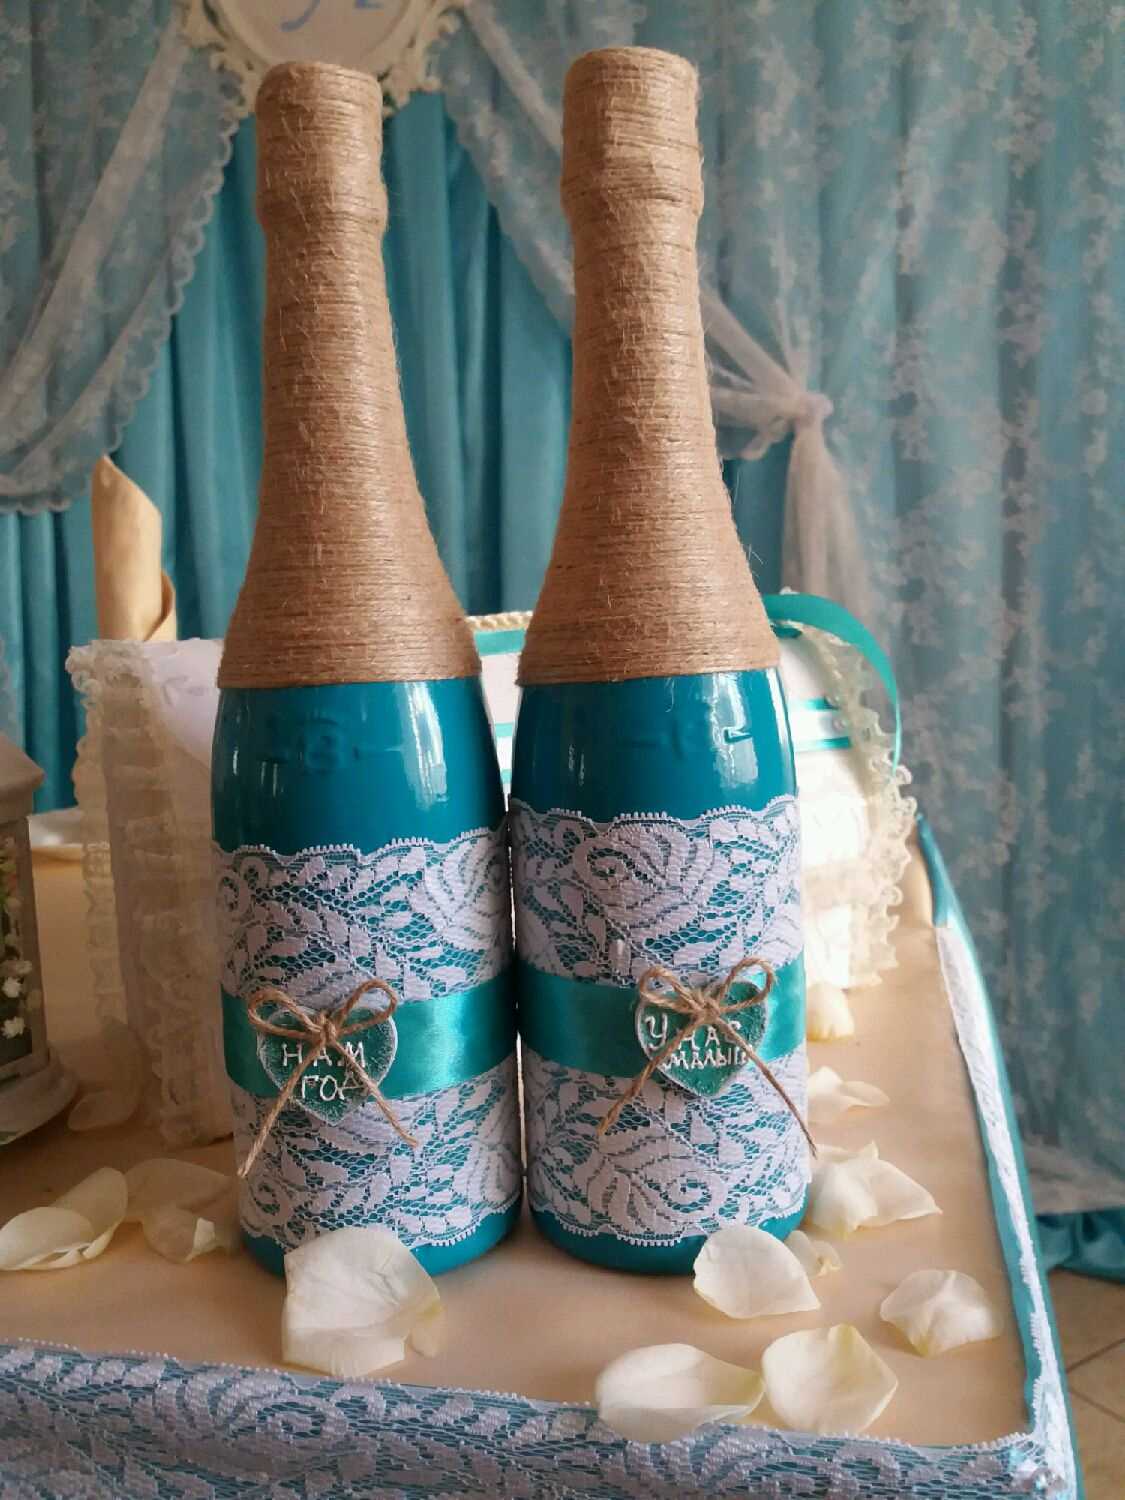 l'idée d'un beau design de bouteilles de champagne avec de la ficelle